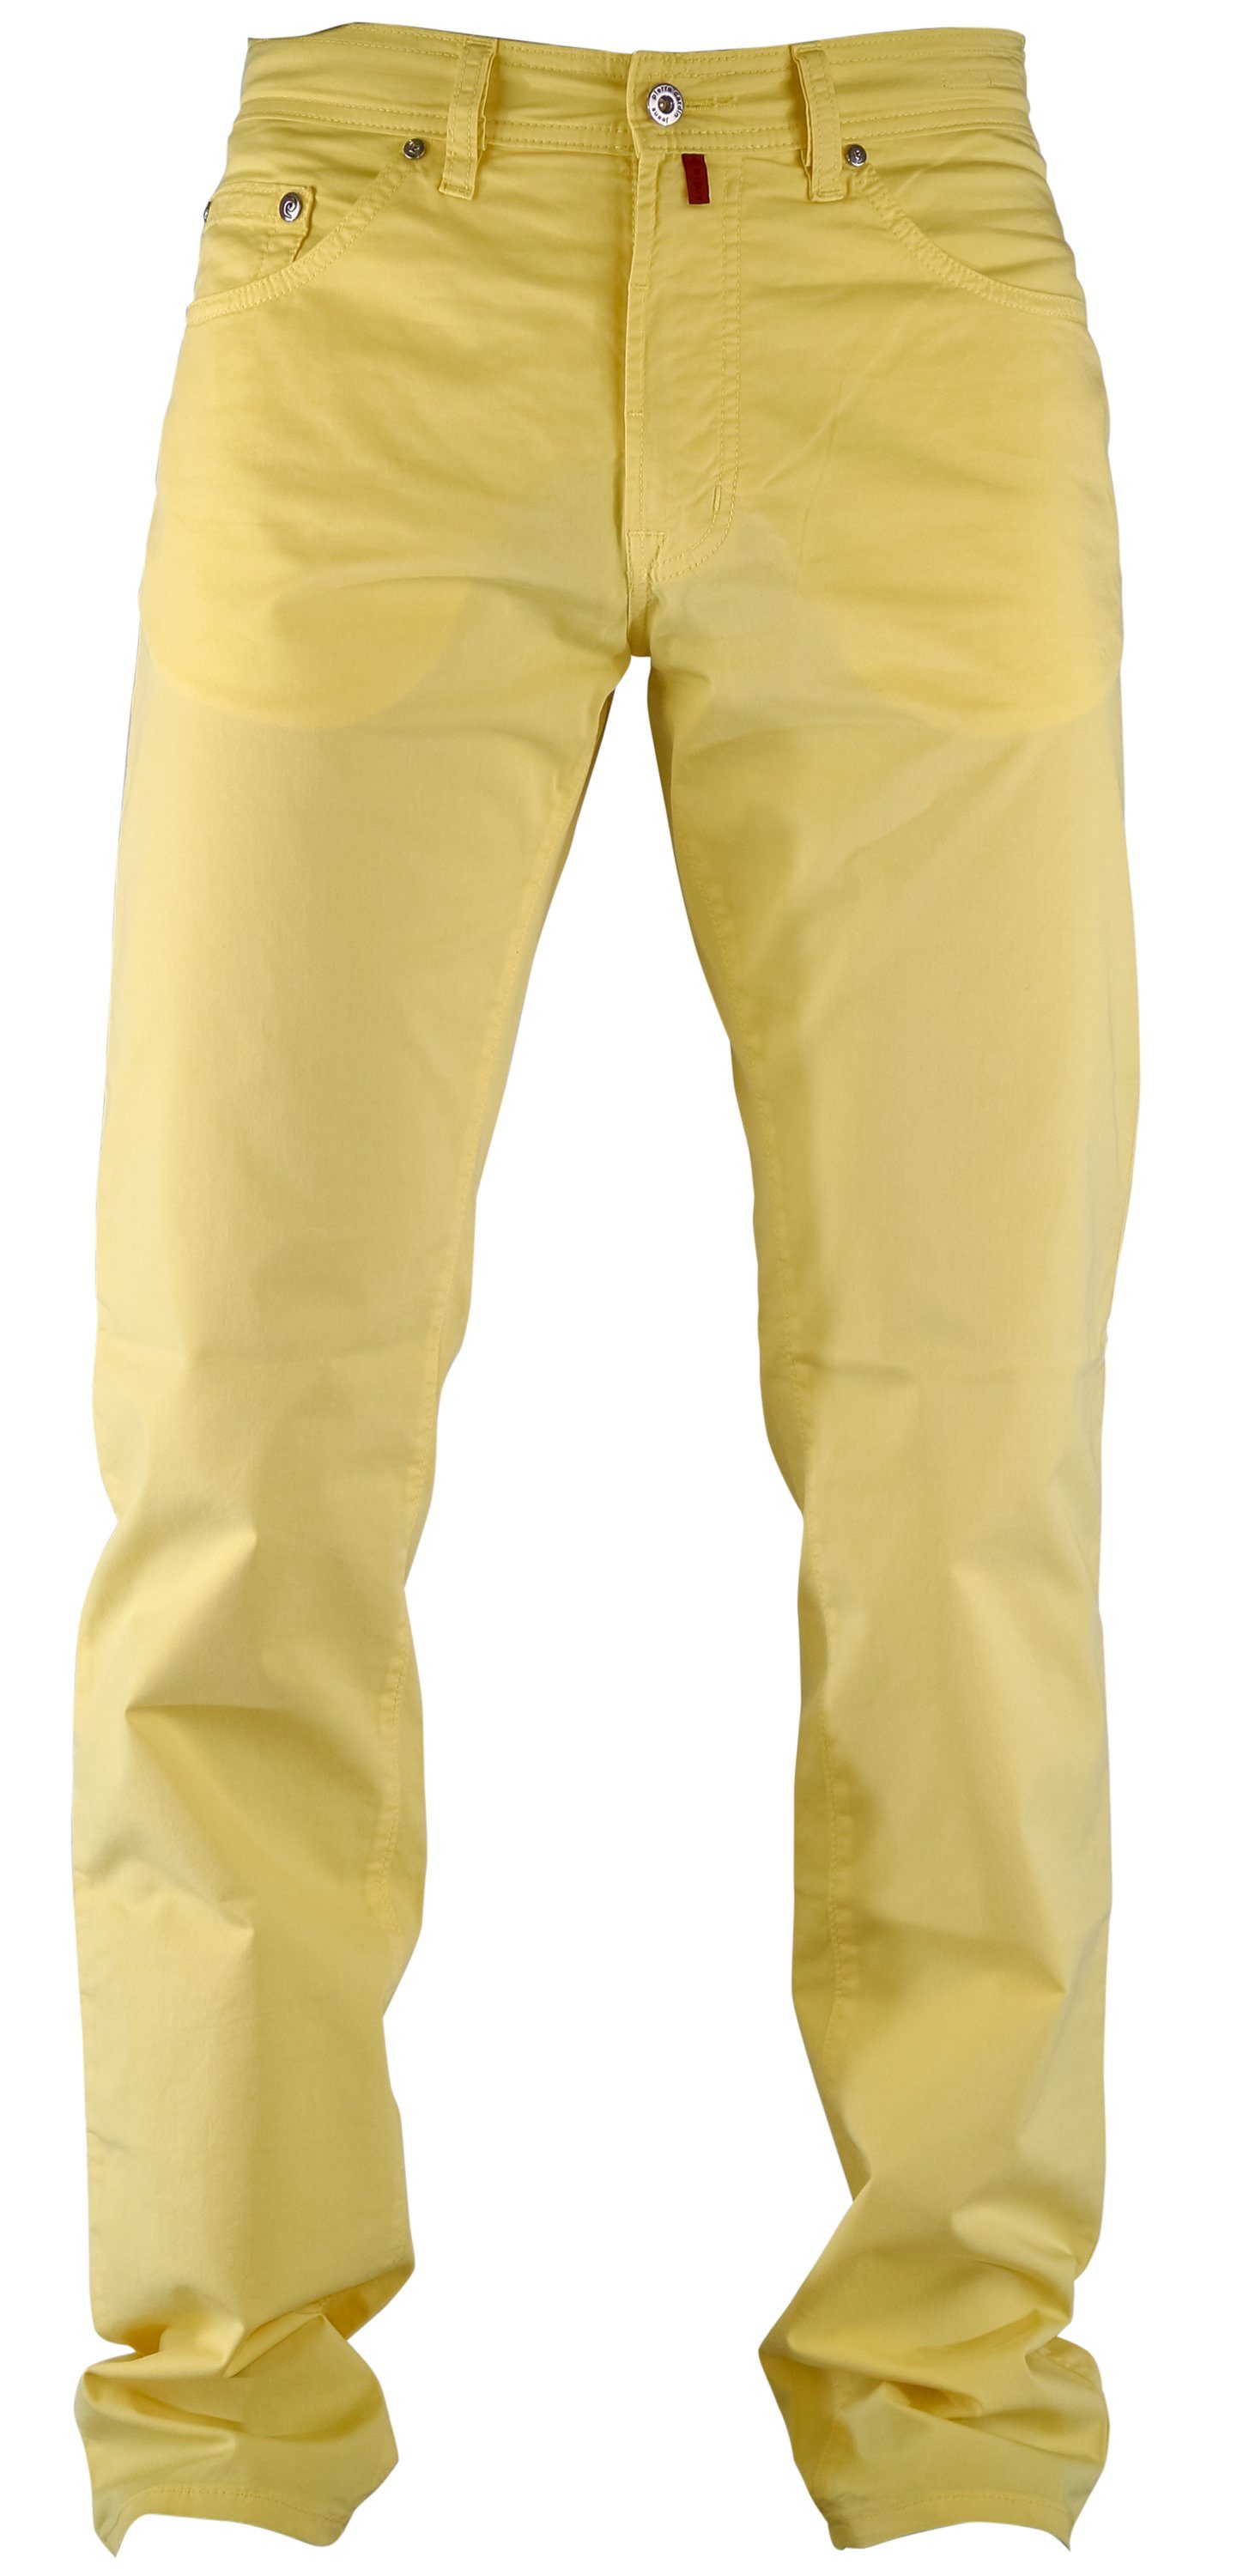 Pierre Cardin 5-Pocket-Jeans »PIERRE CARDIN DEAUVILLE summer air touch  yellow« online kaufen | OTTO